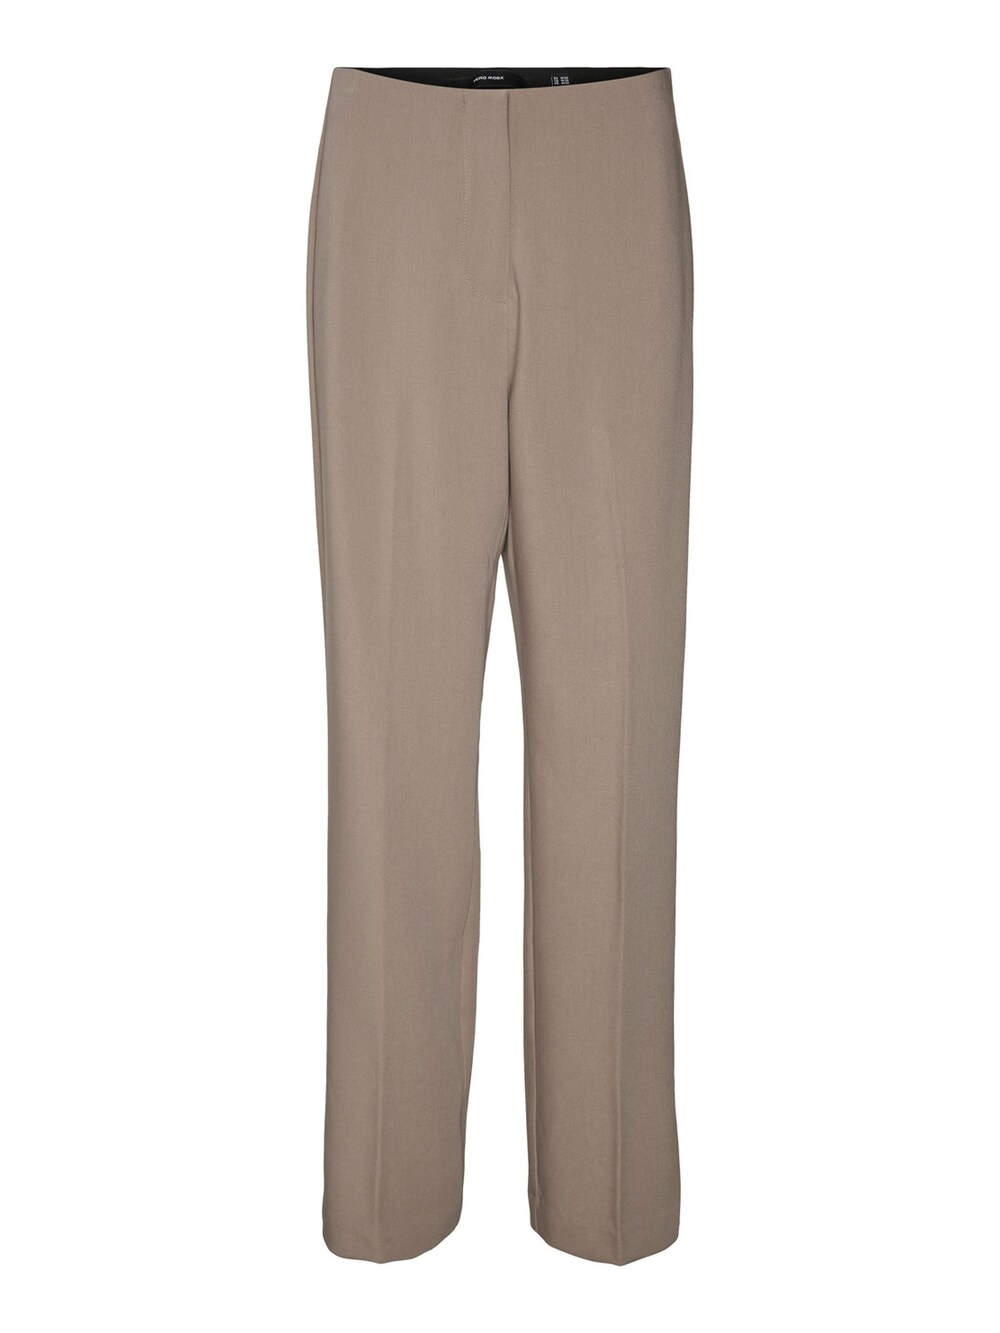 Обычные плиссированные брюки Vero Moda, коричневый